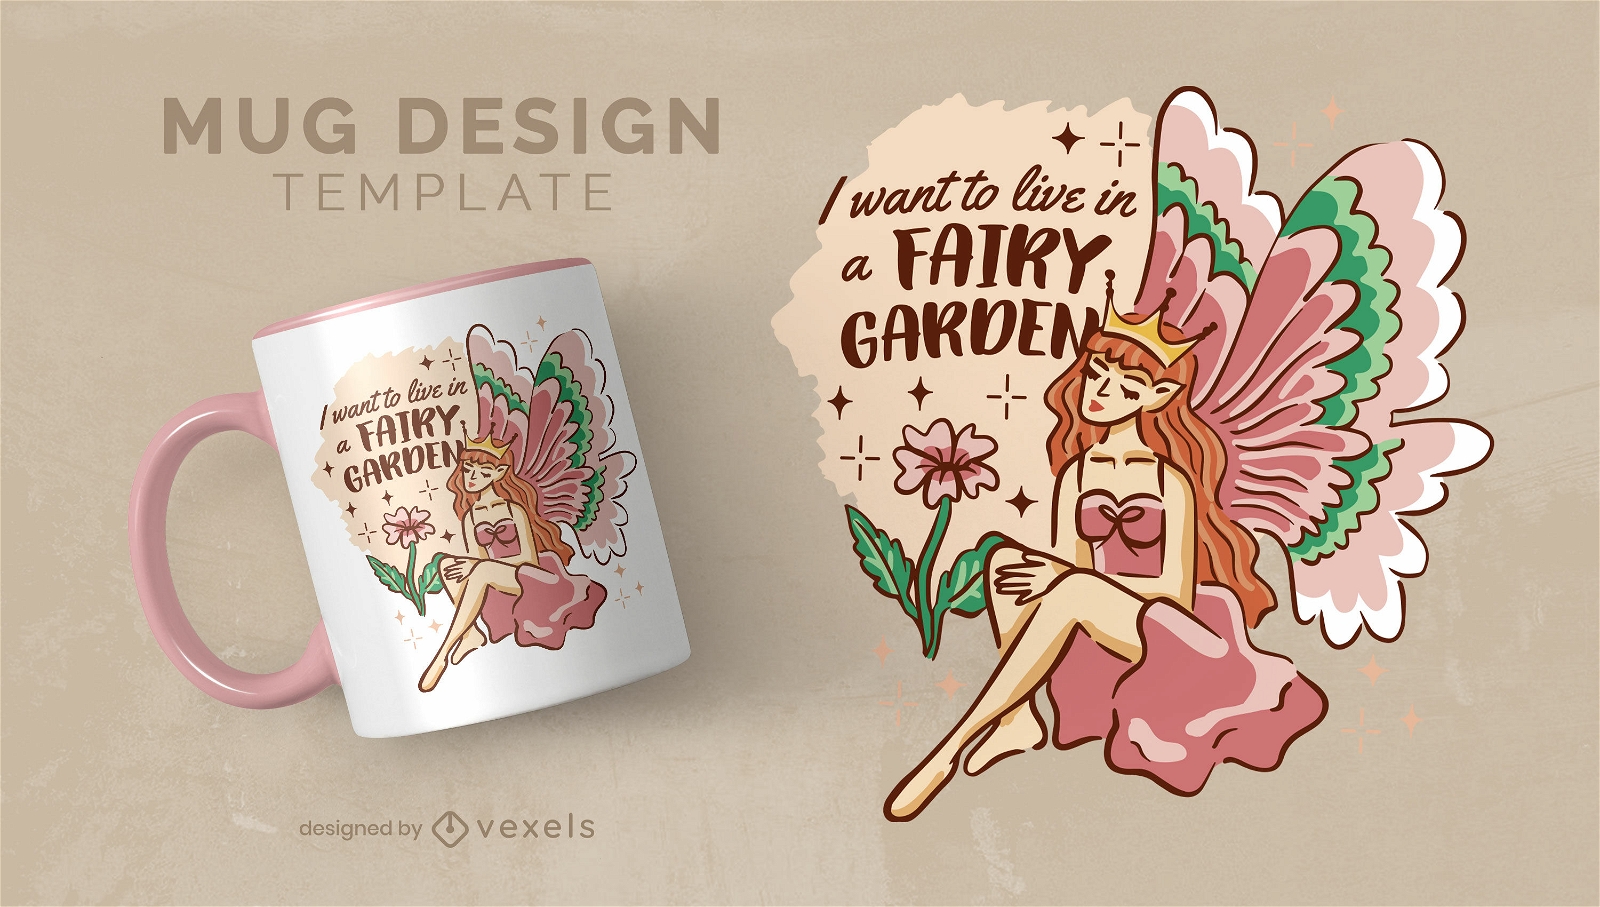 Fairycore garden quote mug template